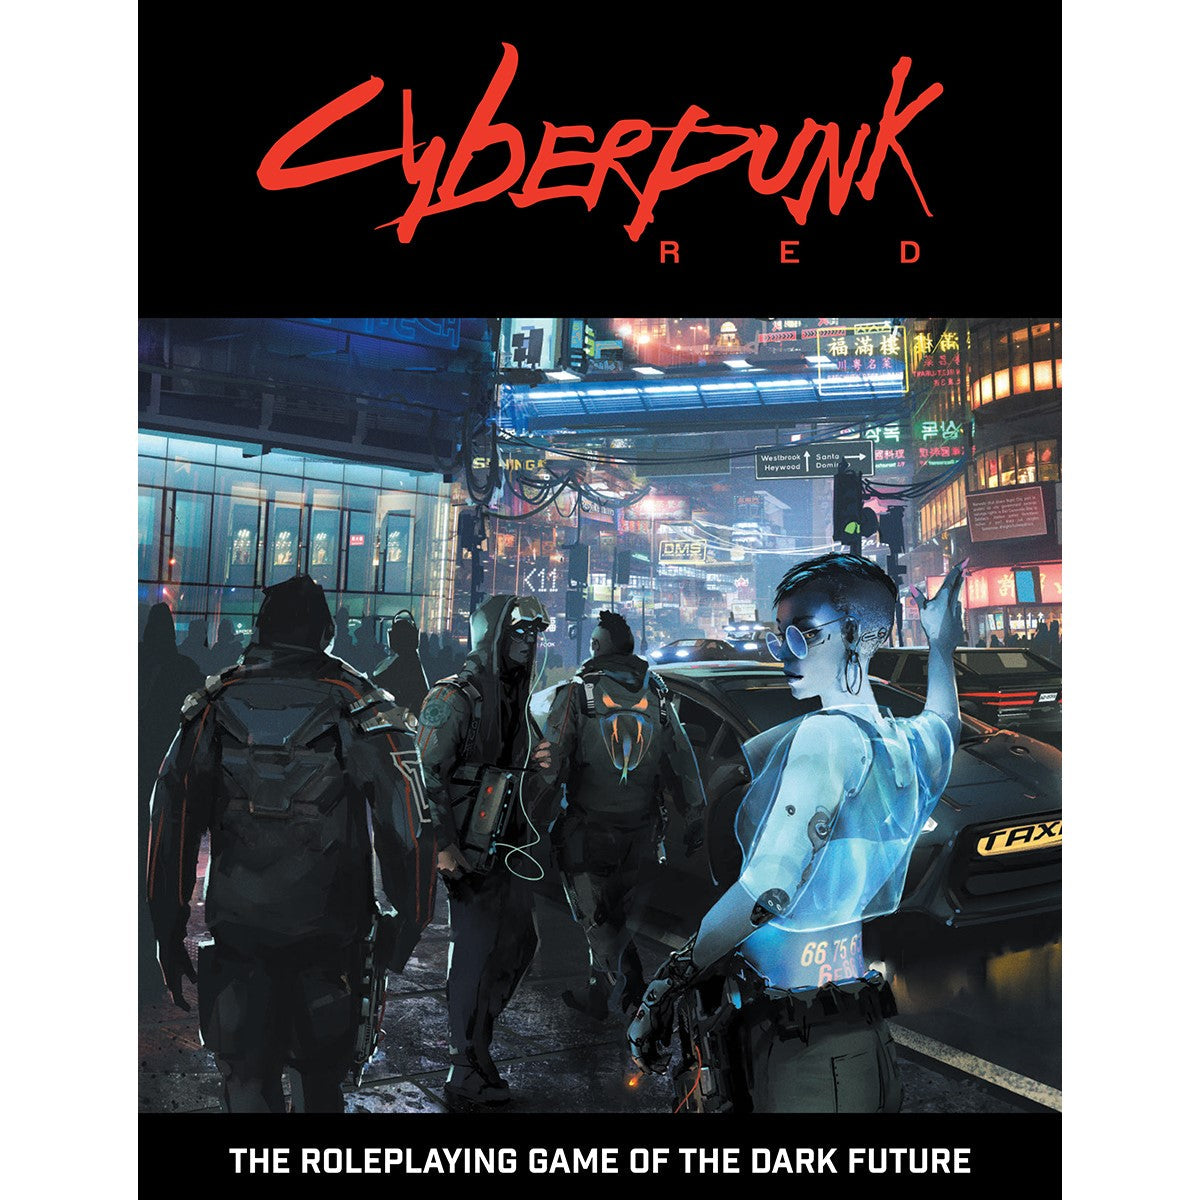 Cyberpunk Red Core Rulebook